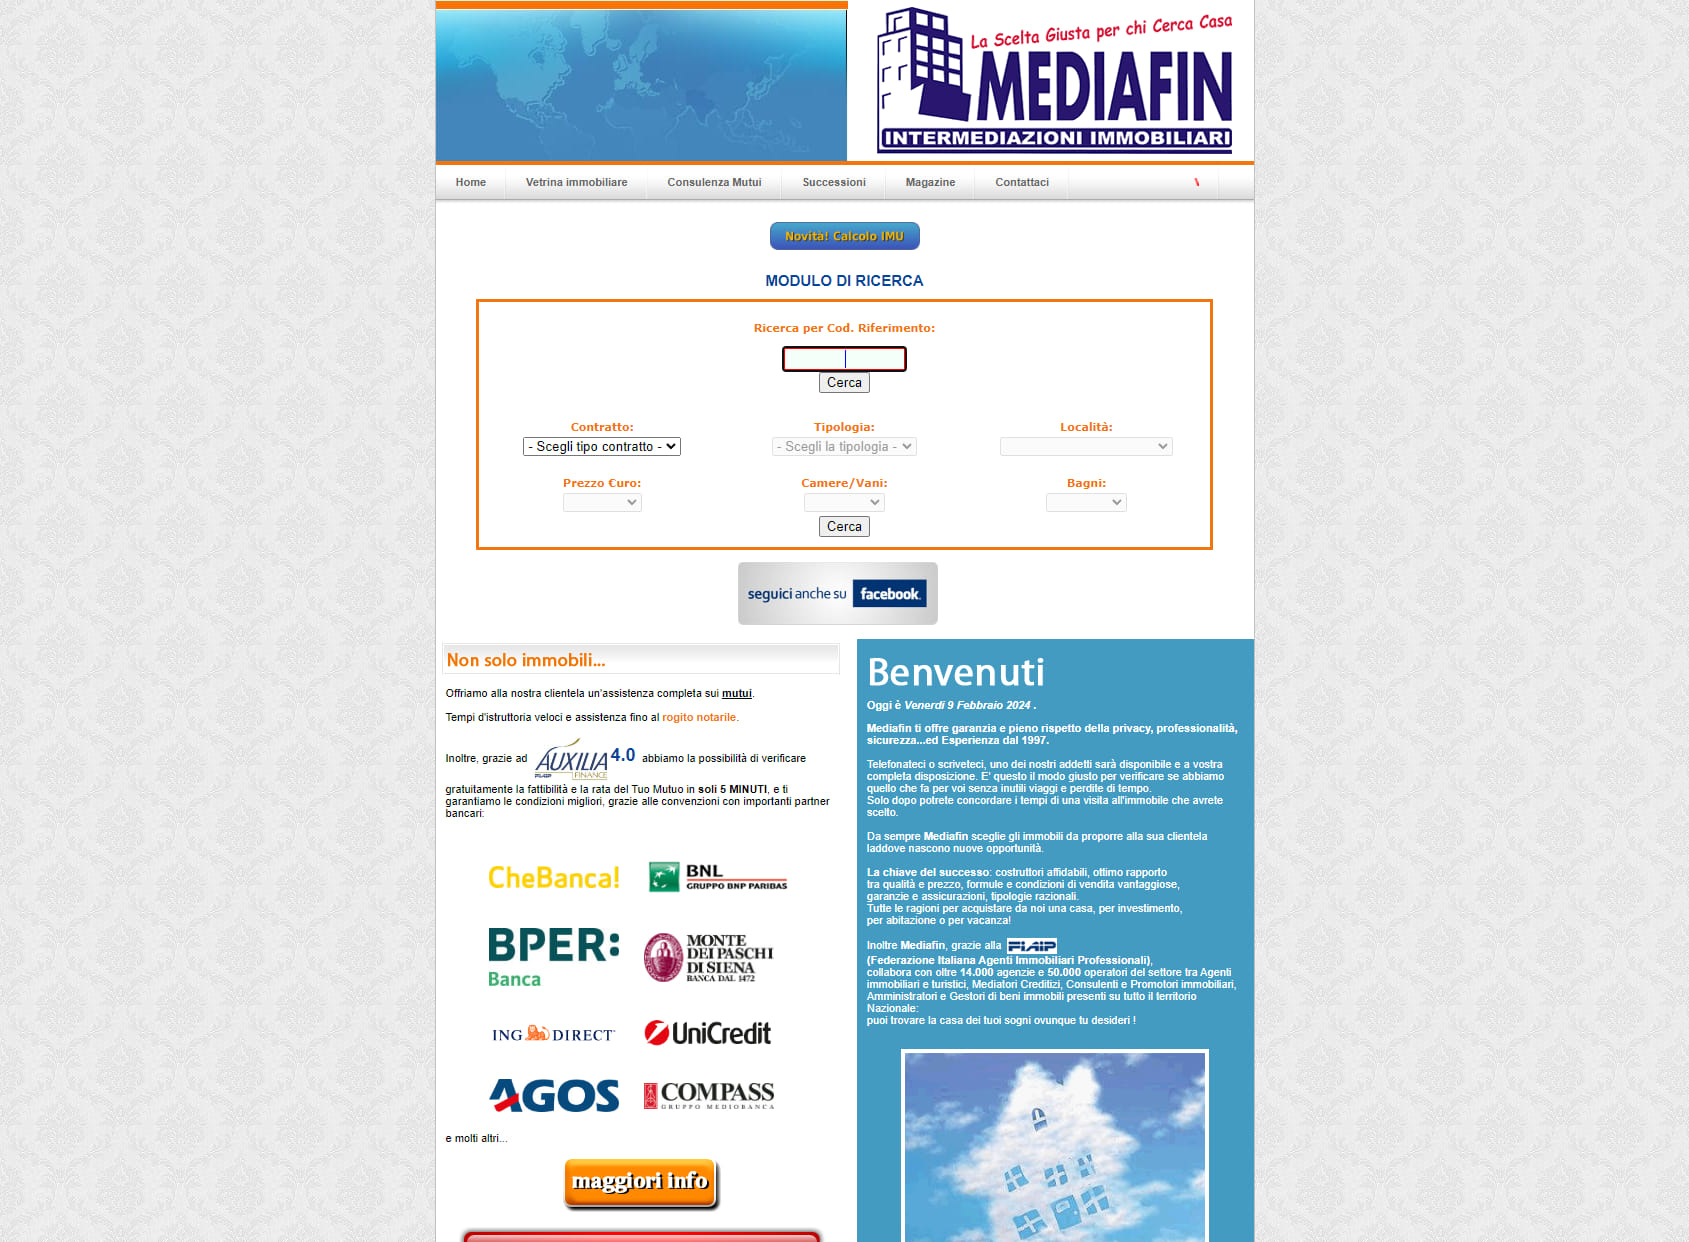 Mediafin - Intermediazioni Immobiliari